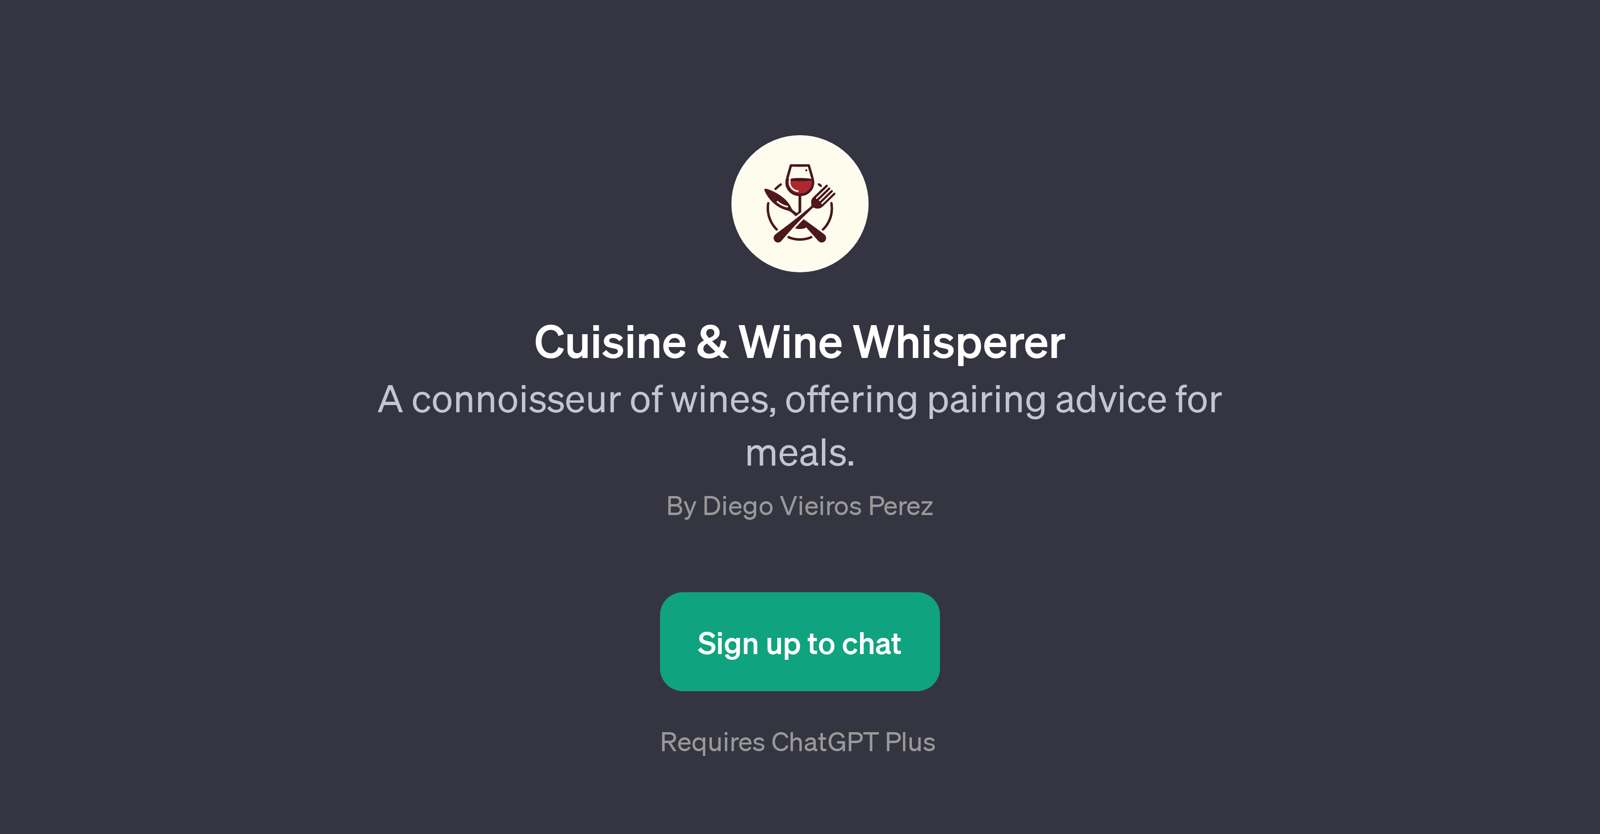 Cuisine & Wine Whisperer website